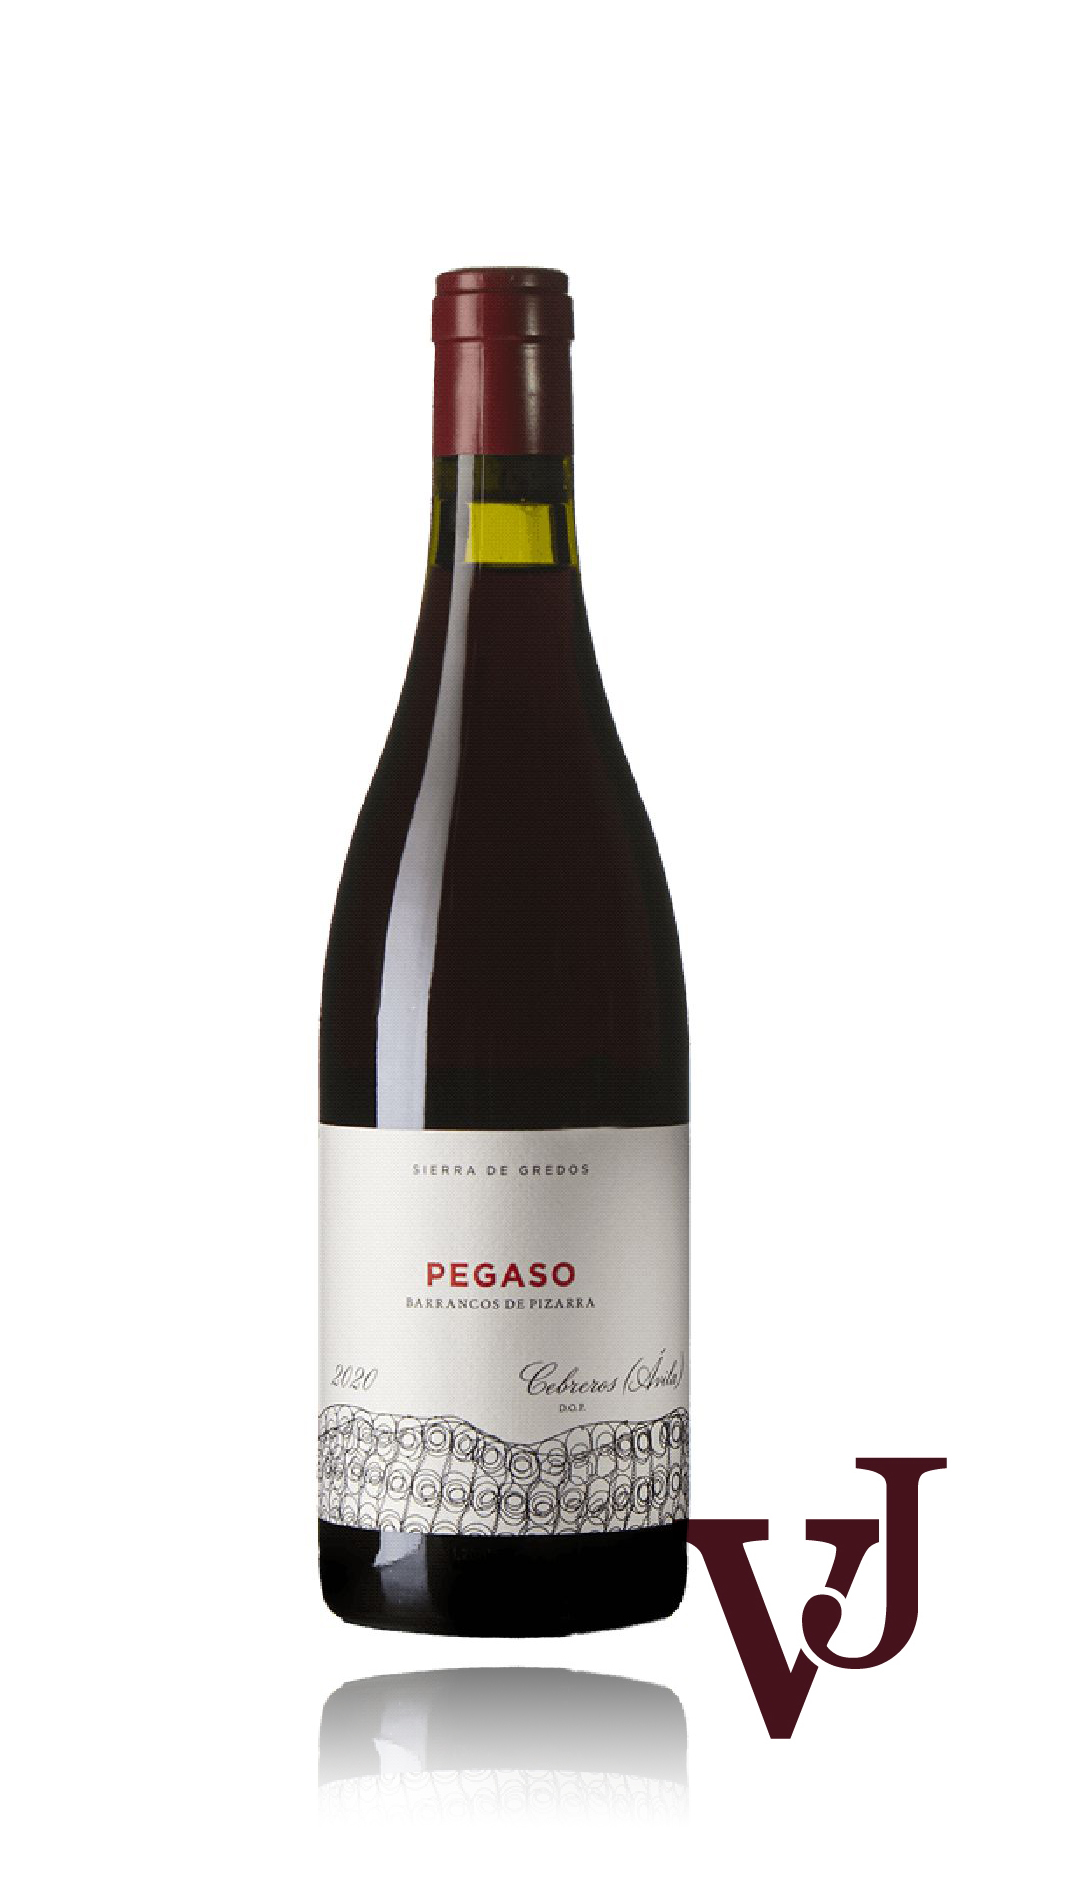 Rött Vin - Pegaso Pizarra Cebreros 2020 artikel nummer 9264801 från producenten Telmo Rodriguez från området